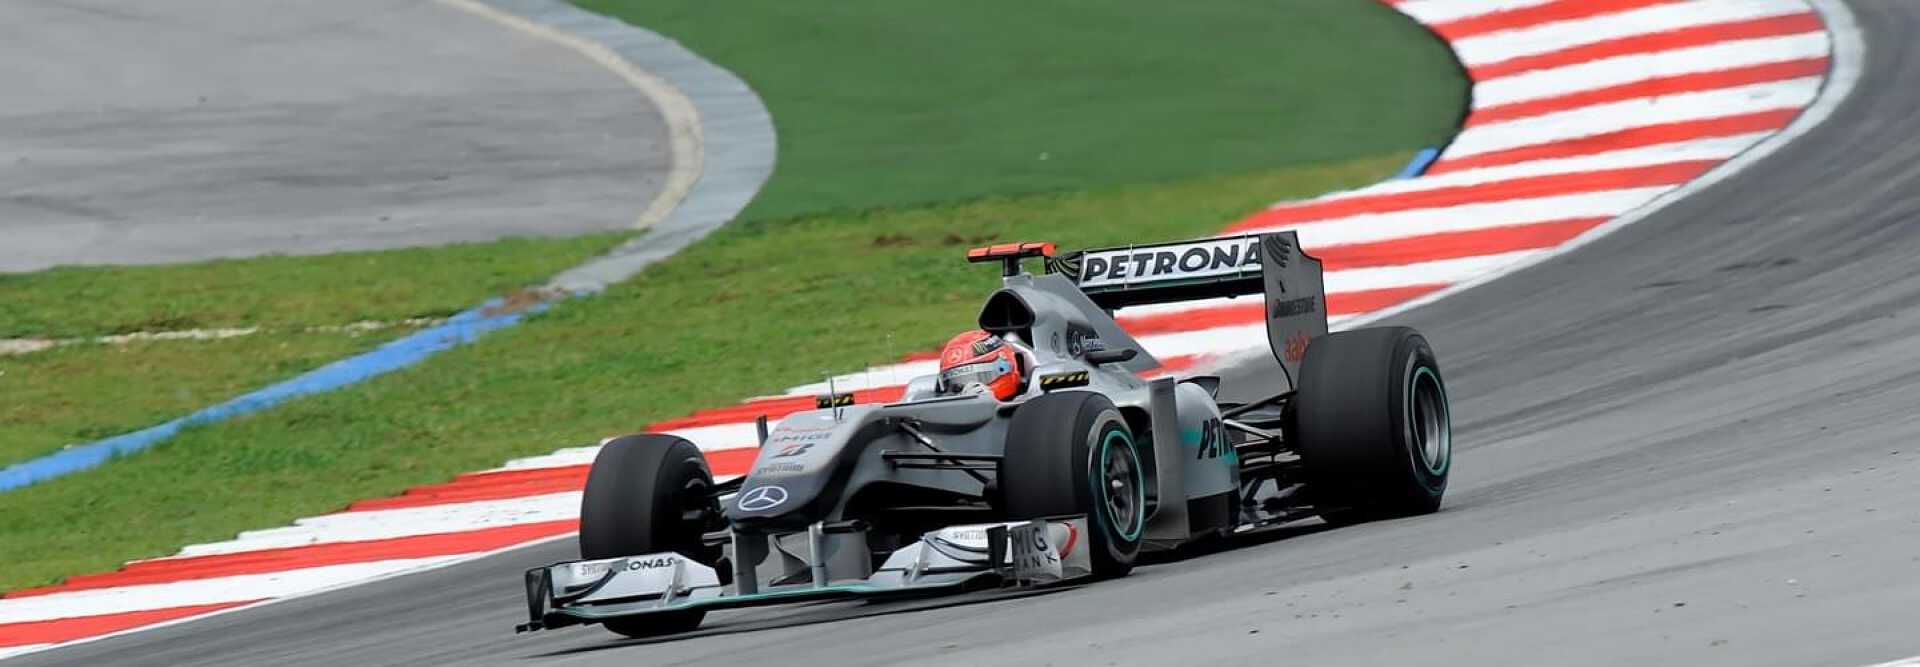 Voiture de course AMG Petronas Mercedes au grand prix de Formule 1 de Malaisie